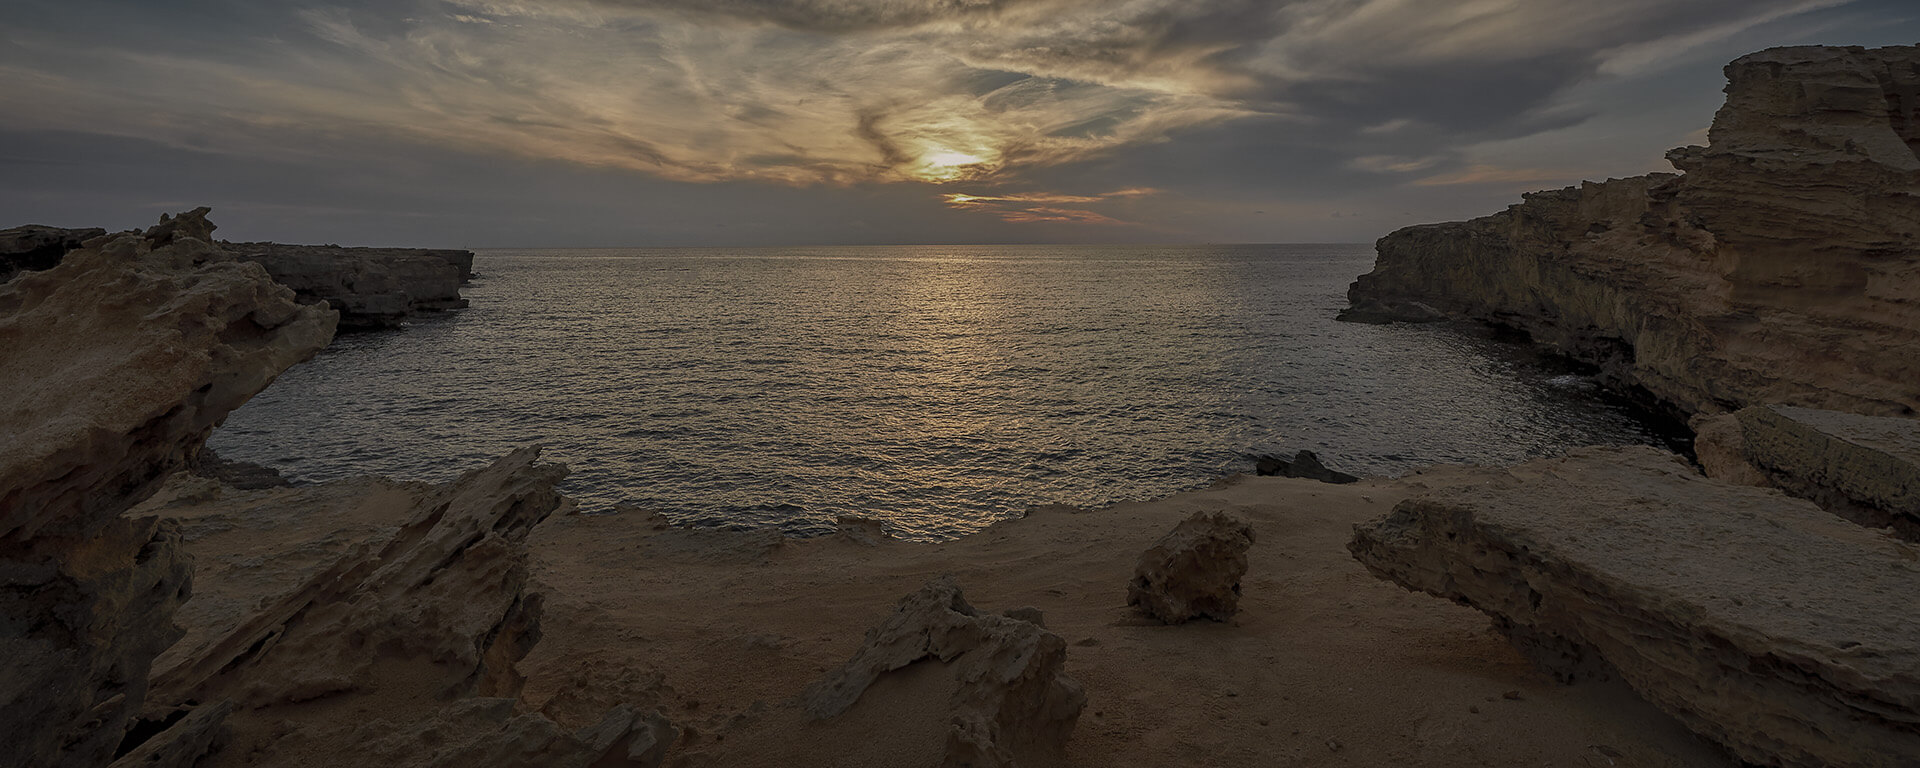 Posta de sol Formentera, Fotografia